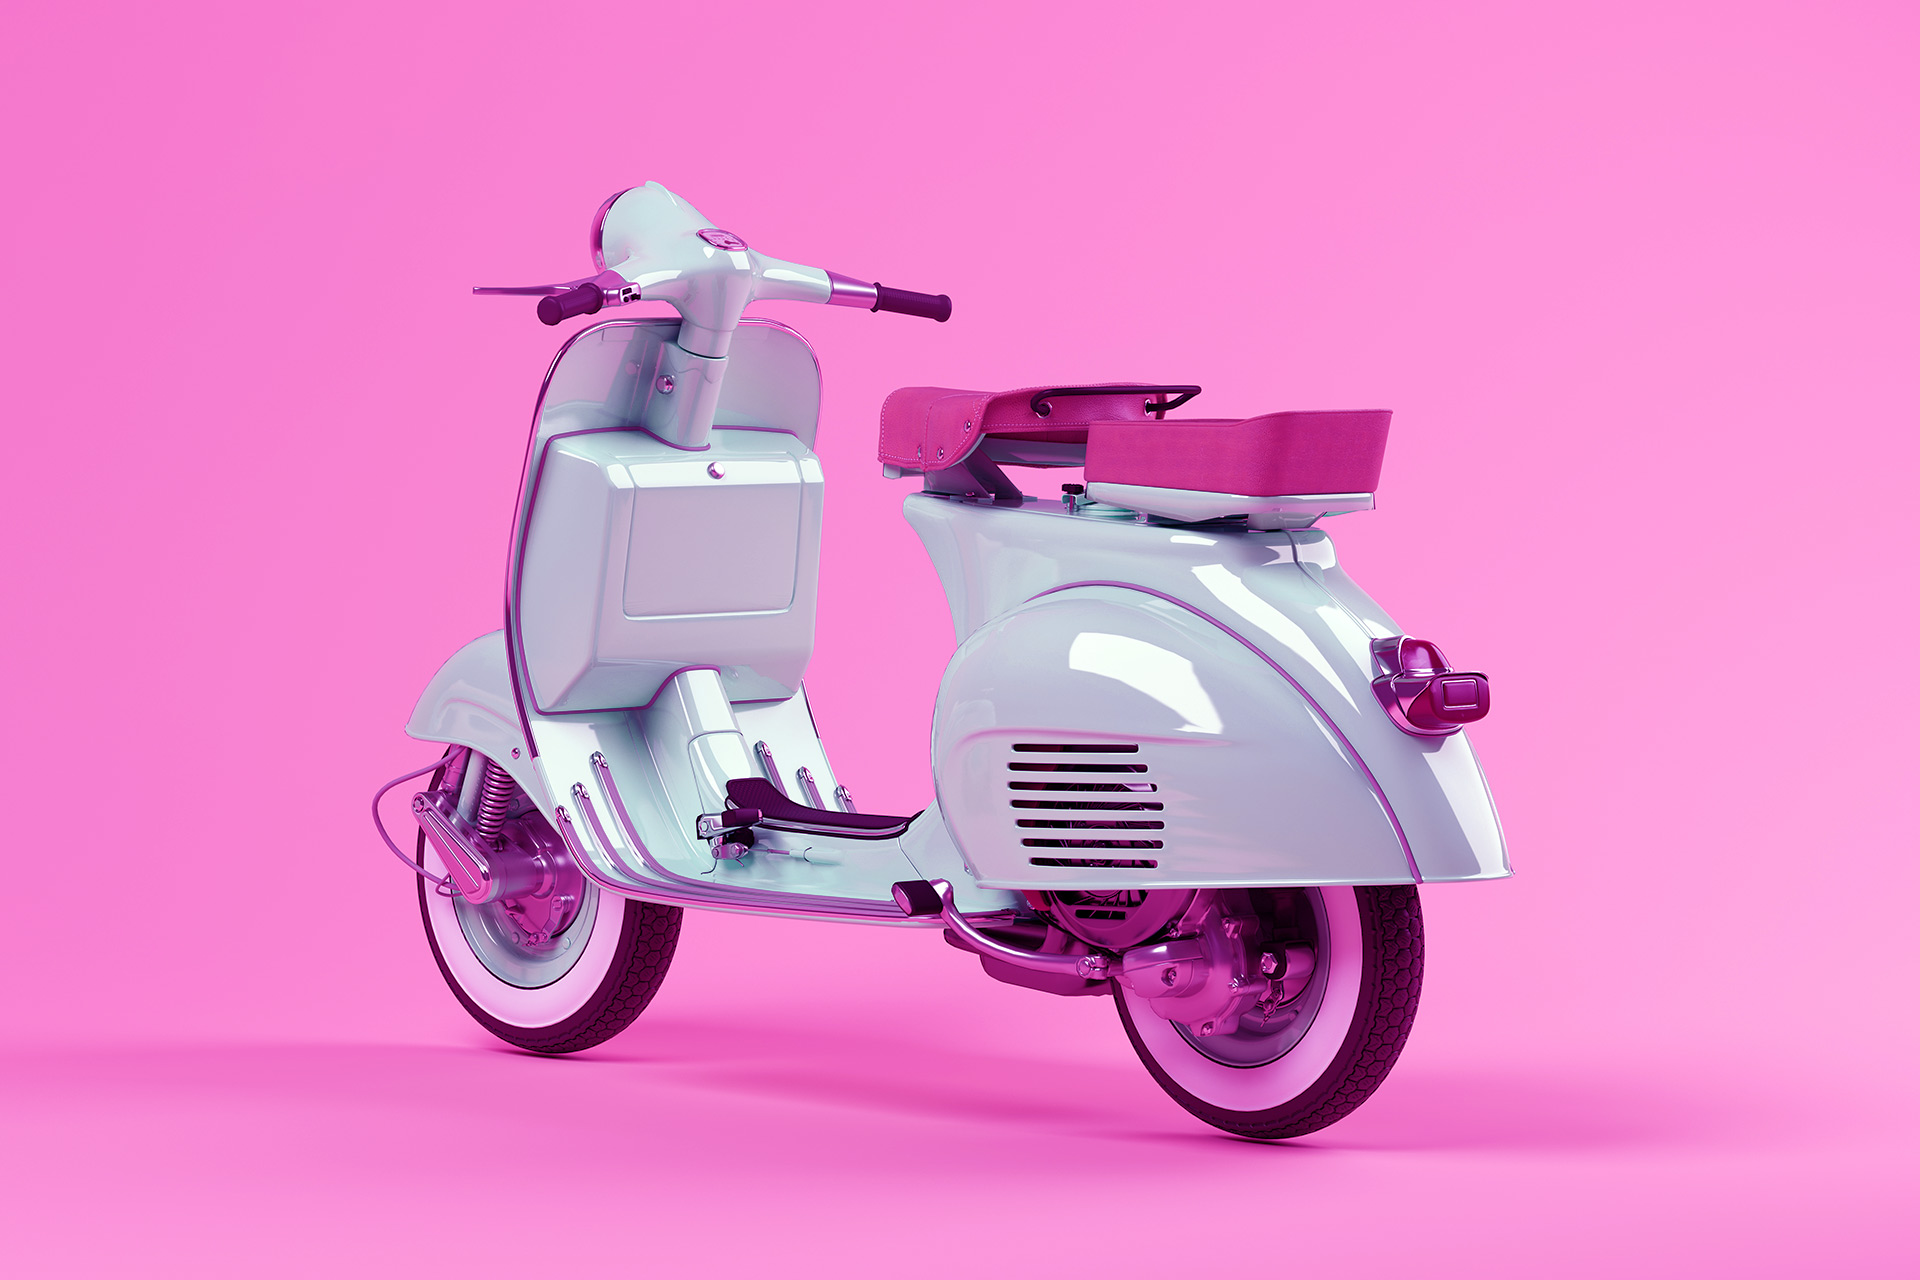 blue-scooter-on-pink-background-3-d-illustration-TM63HSJb.jpg